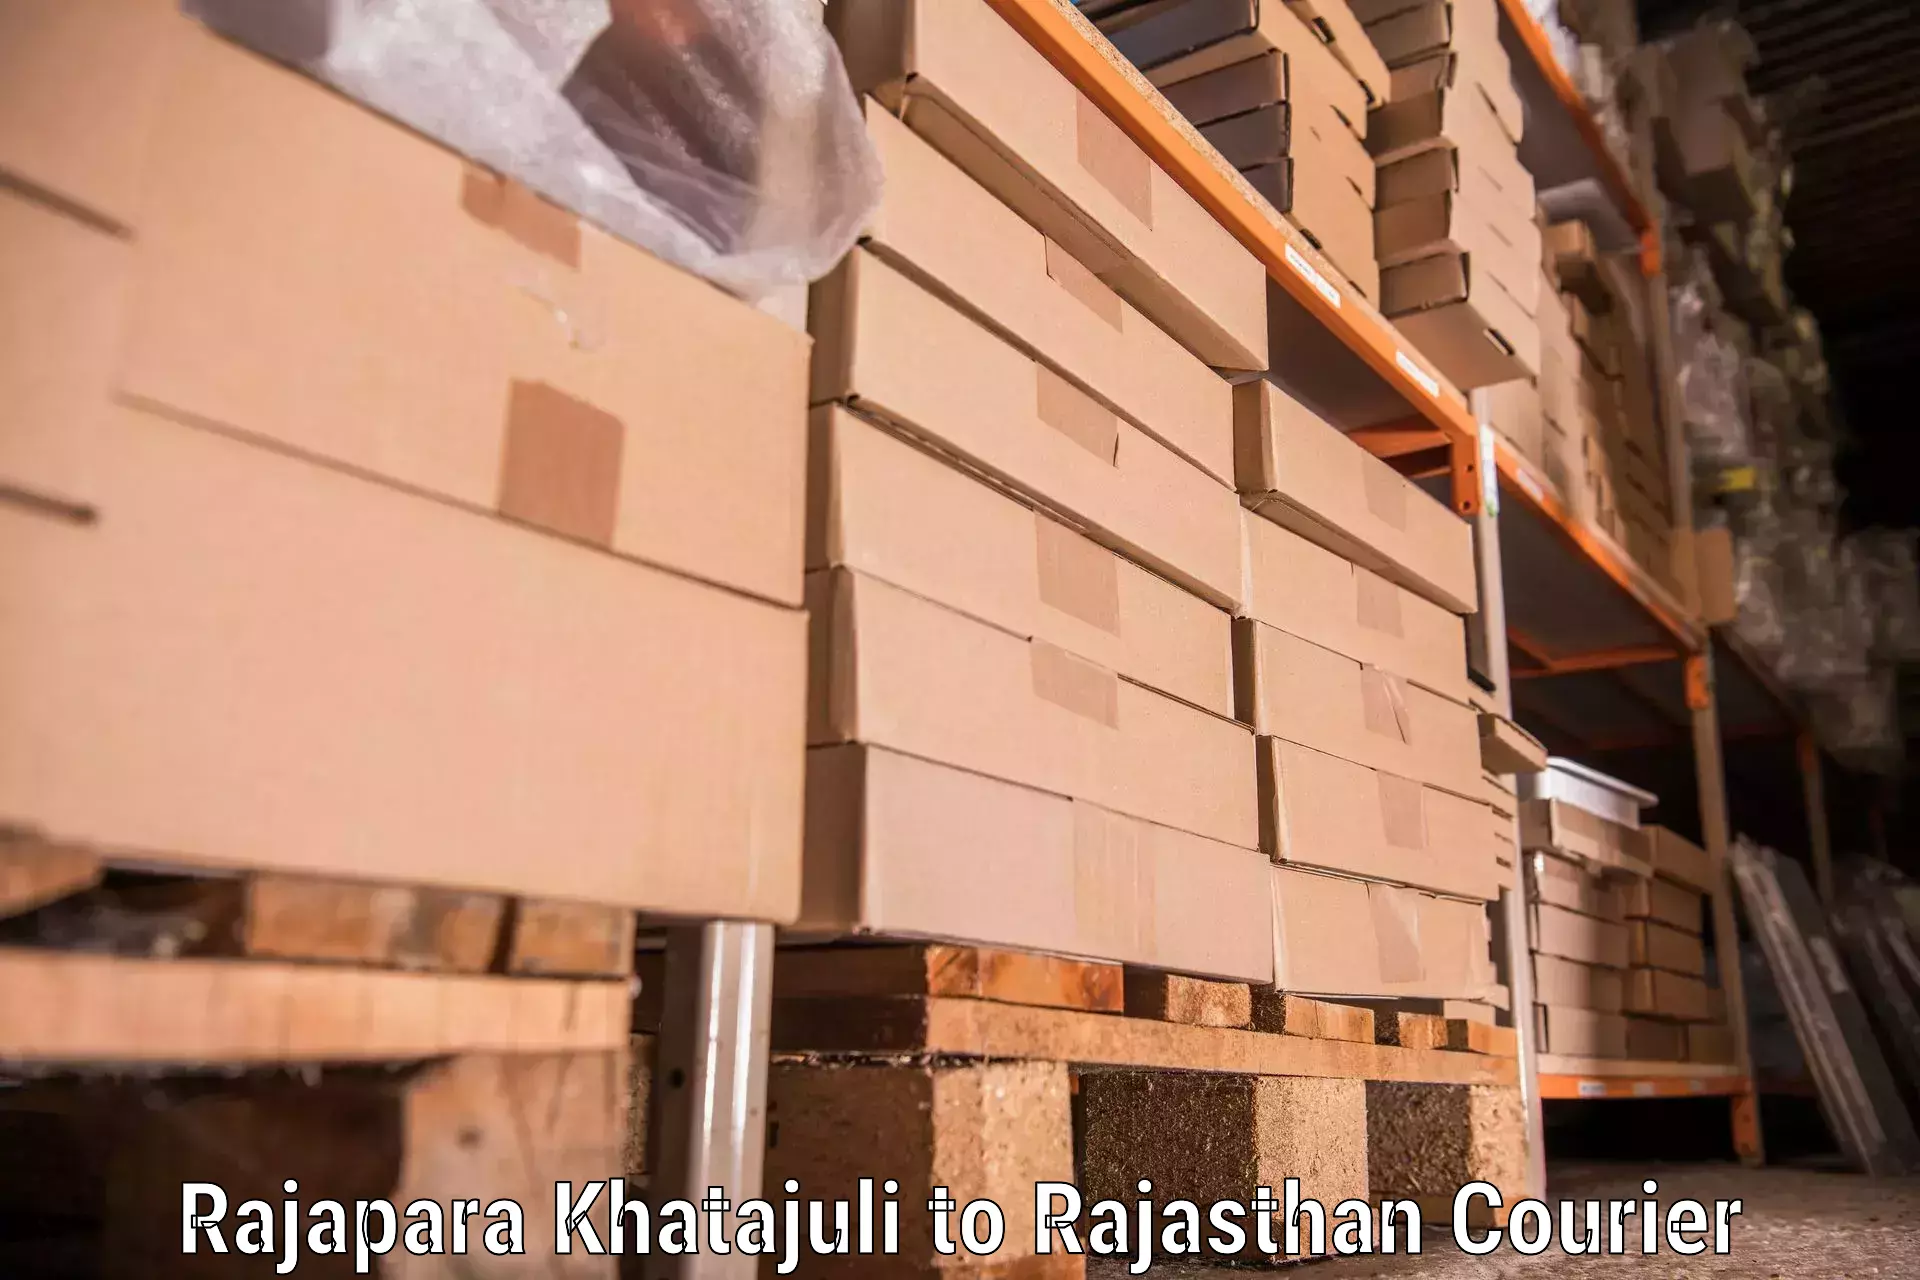 Furniture transport services Rajapara Khatajuli to Rajasthan